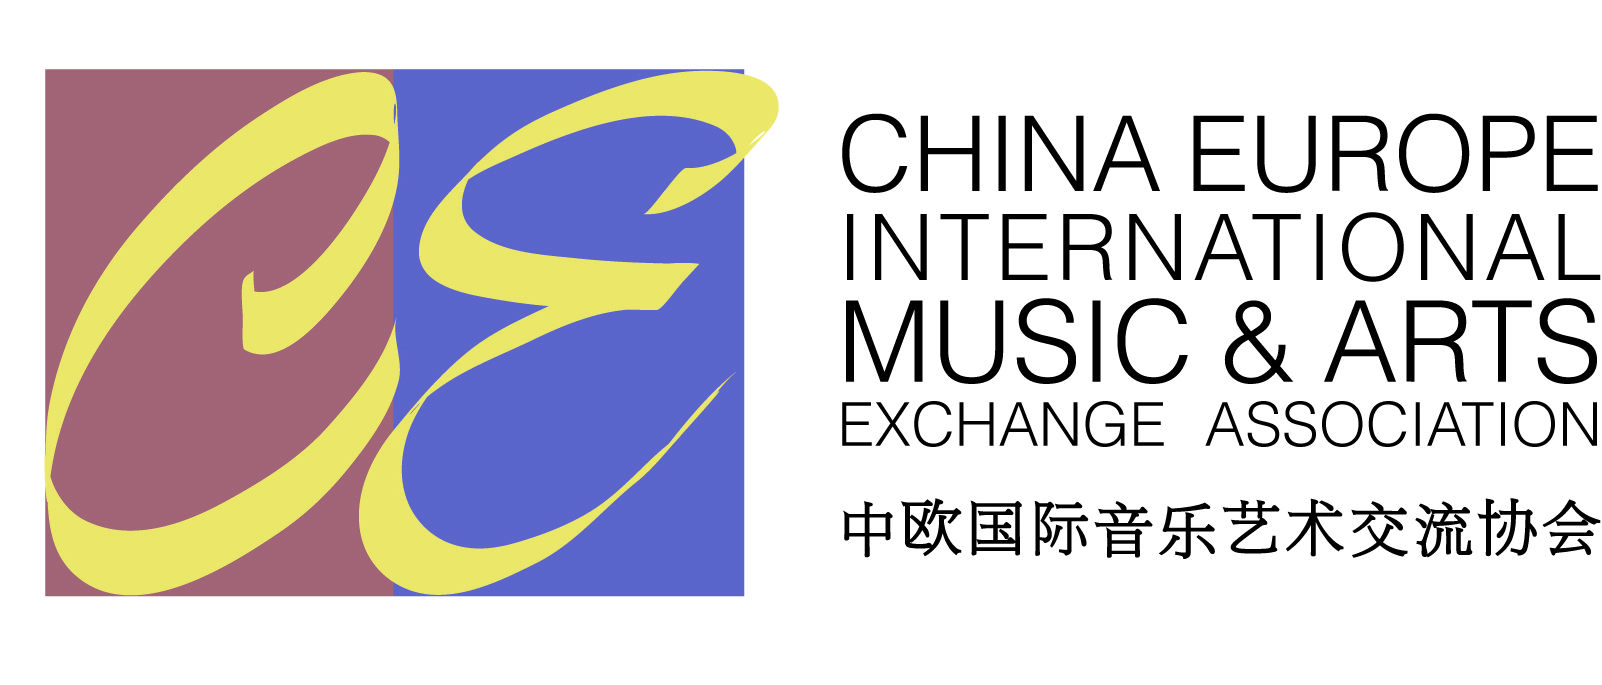 中欧国际音乐艺术交流协会